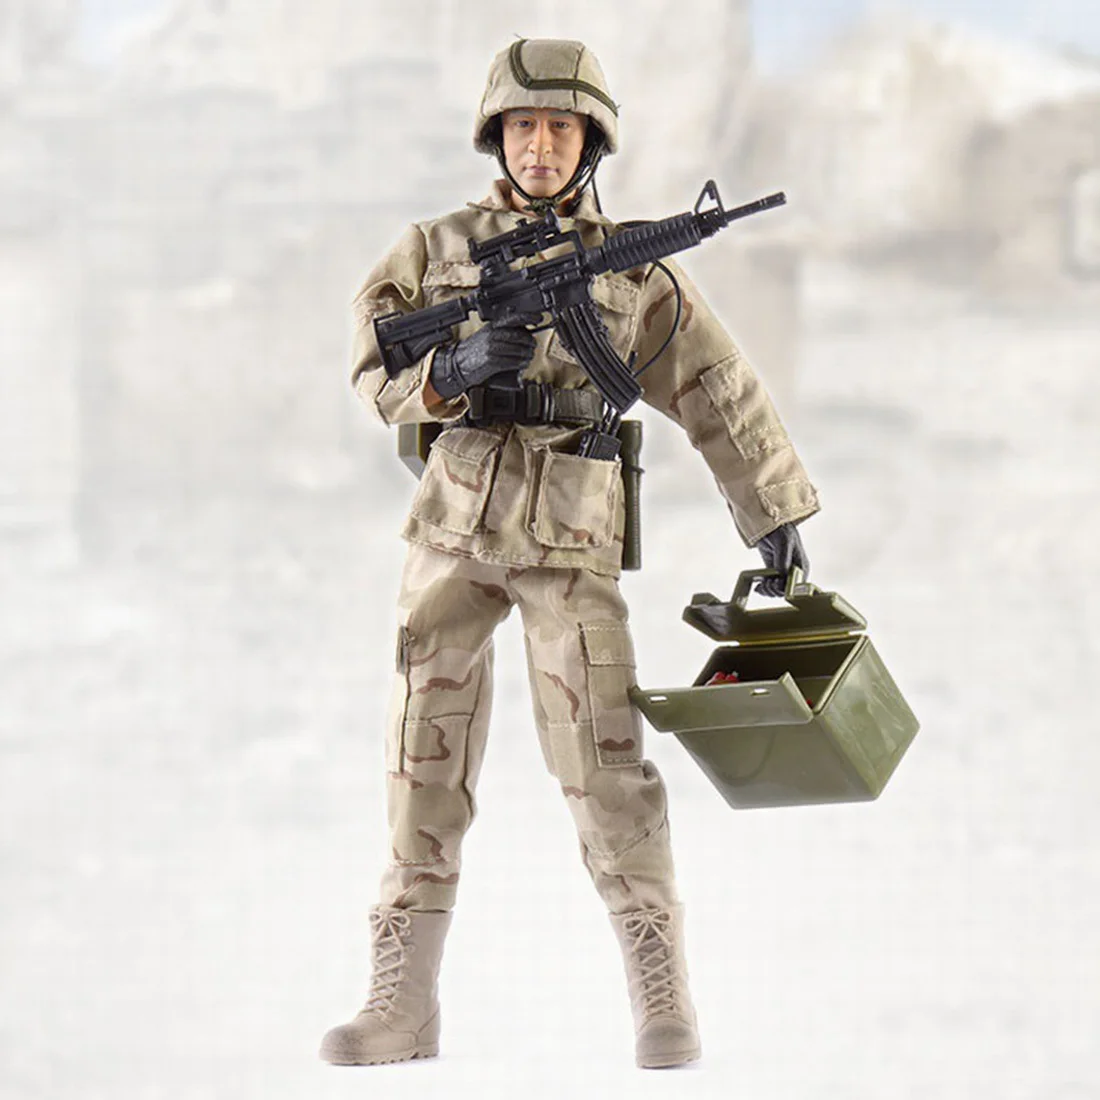 Rowsfire 1:6 Реалистичная подвижная фигурка боевого инженера, военный солдат, модель, набор, экшн-игрушка, фигурки, американский стиль, Лидер продаж